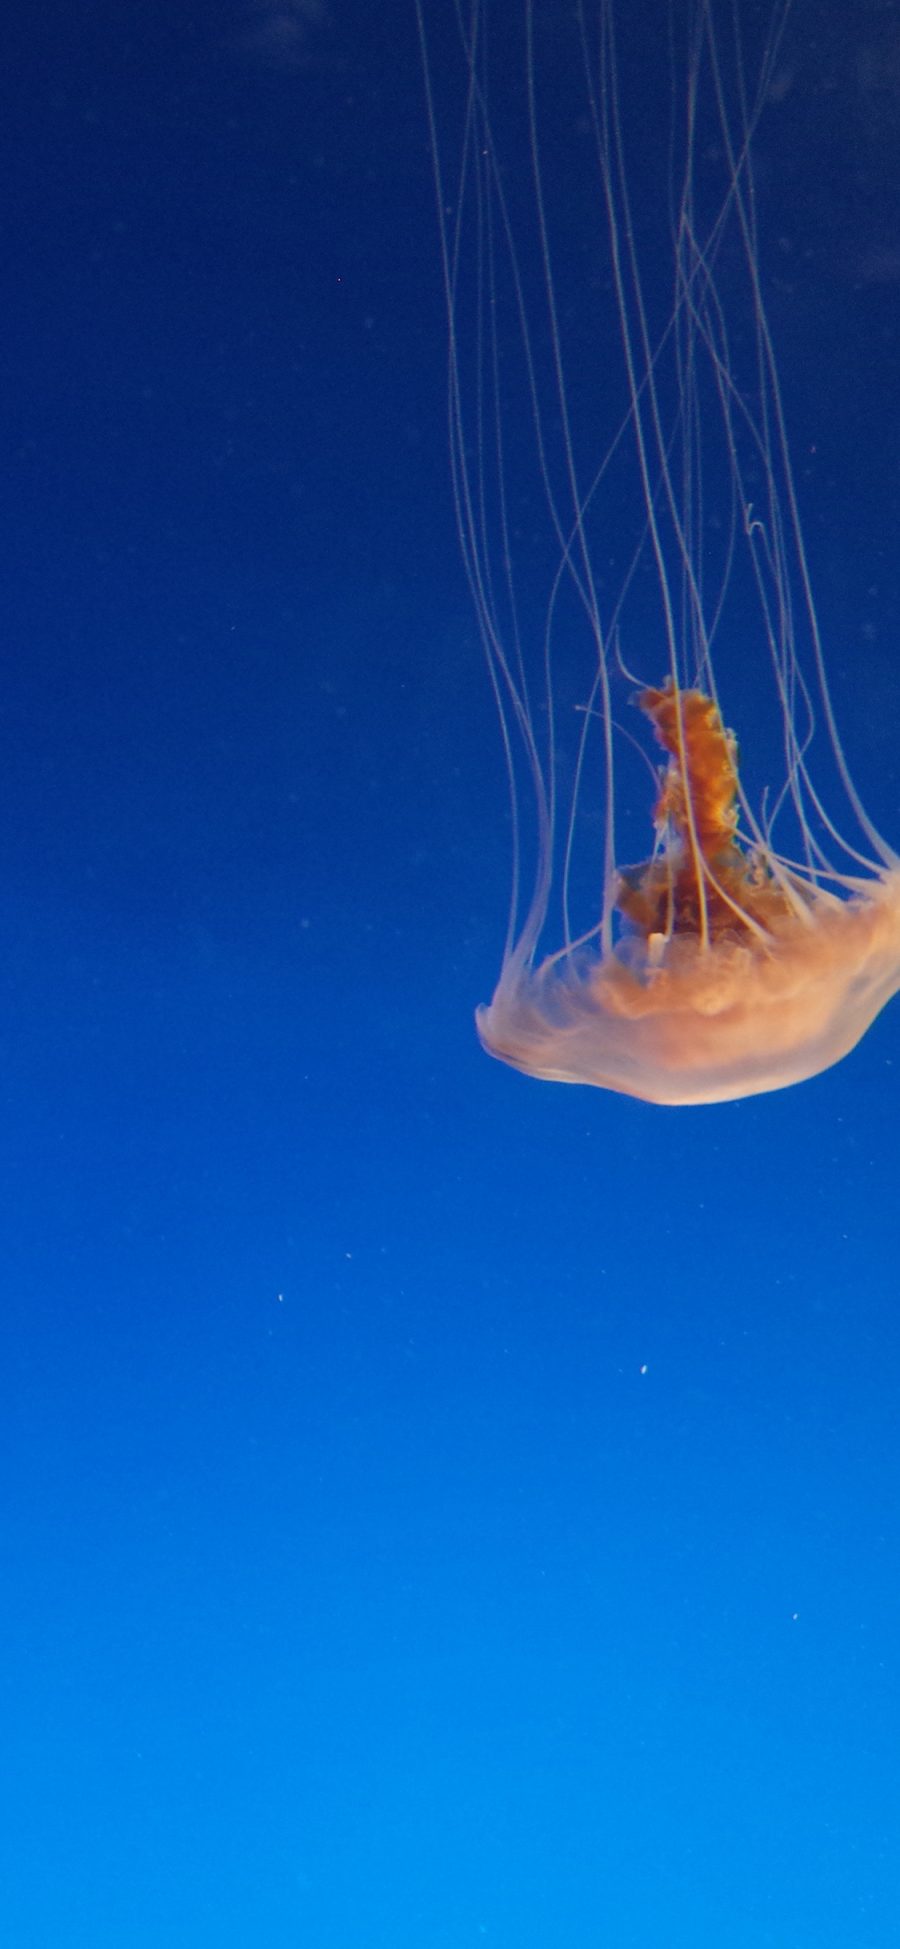 [2436×1125]水母 海洋生物 蔚蓝大海 漂浮 苹果手机壁纸图片